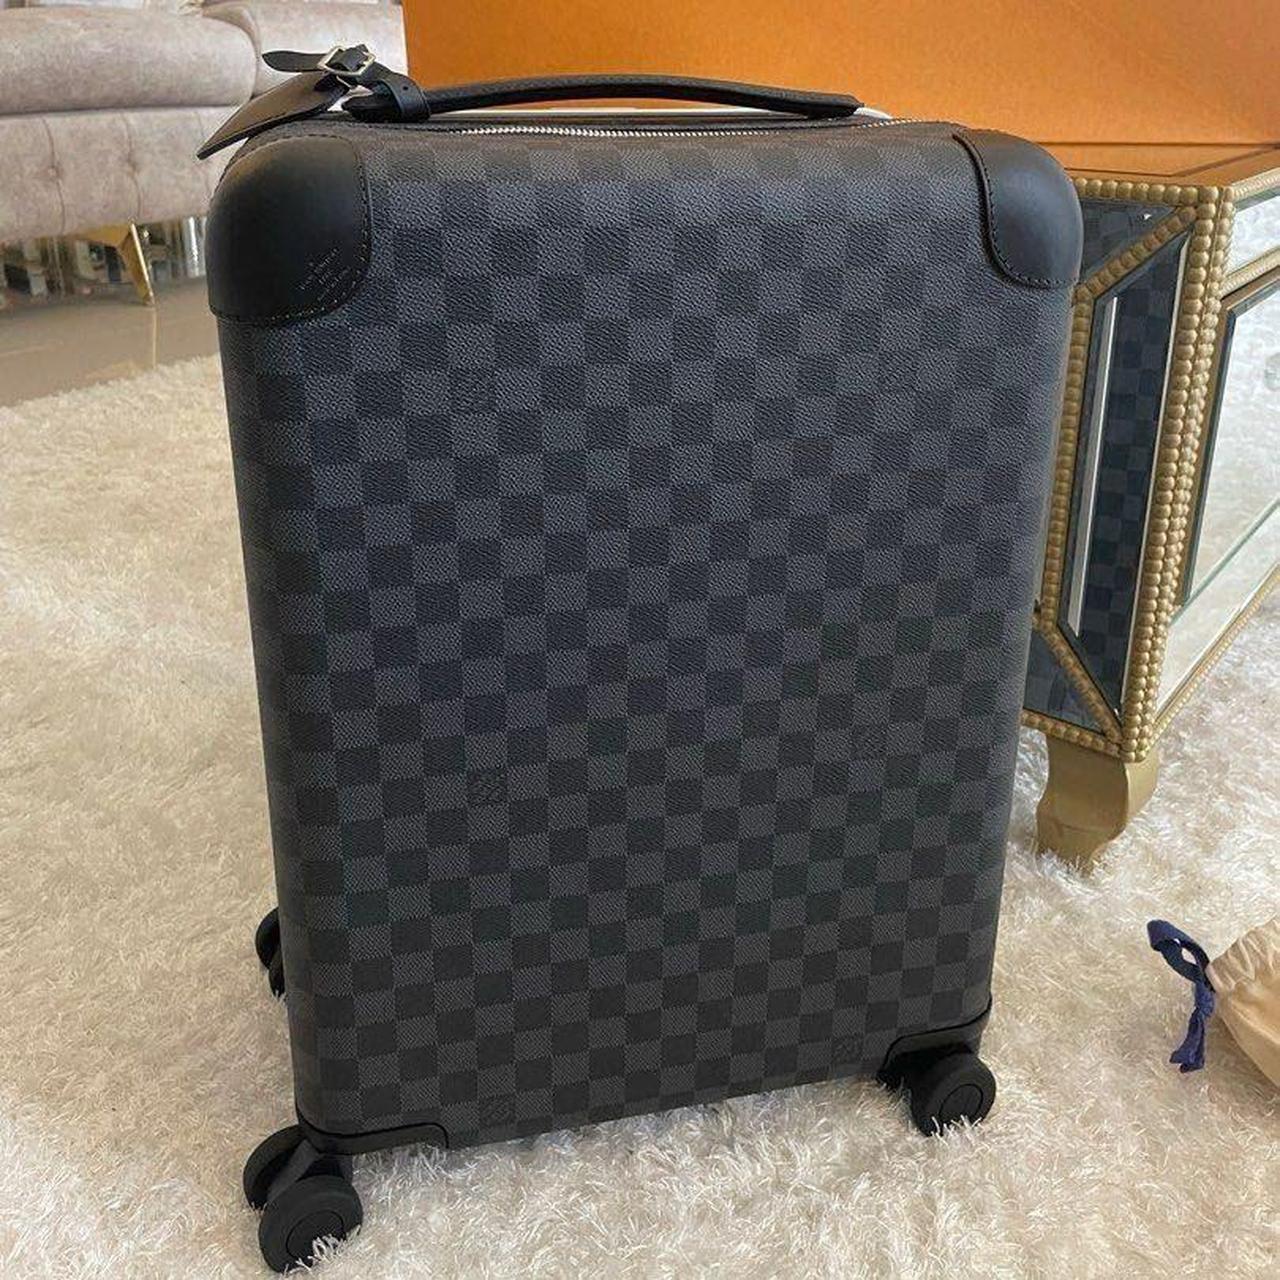 NEW Authentic Louis vuitton suitcase bag. Receipt... - Depop